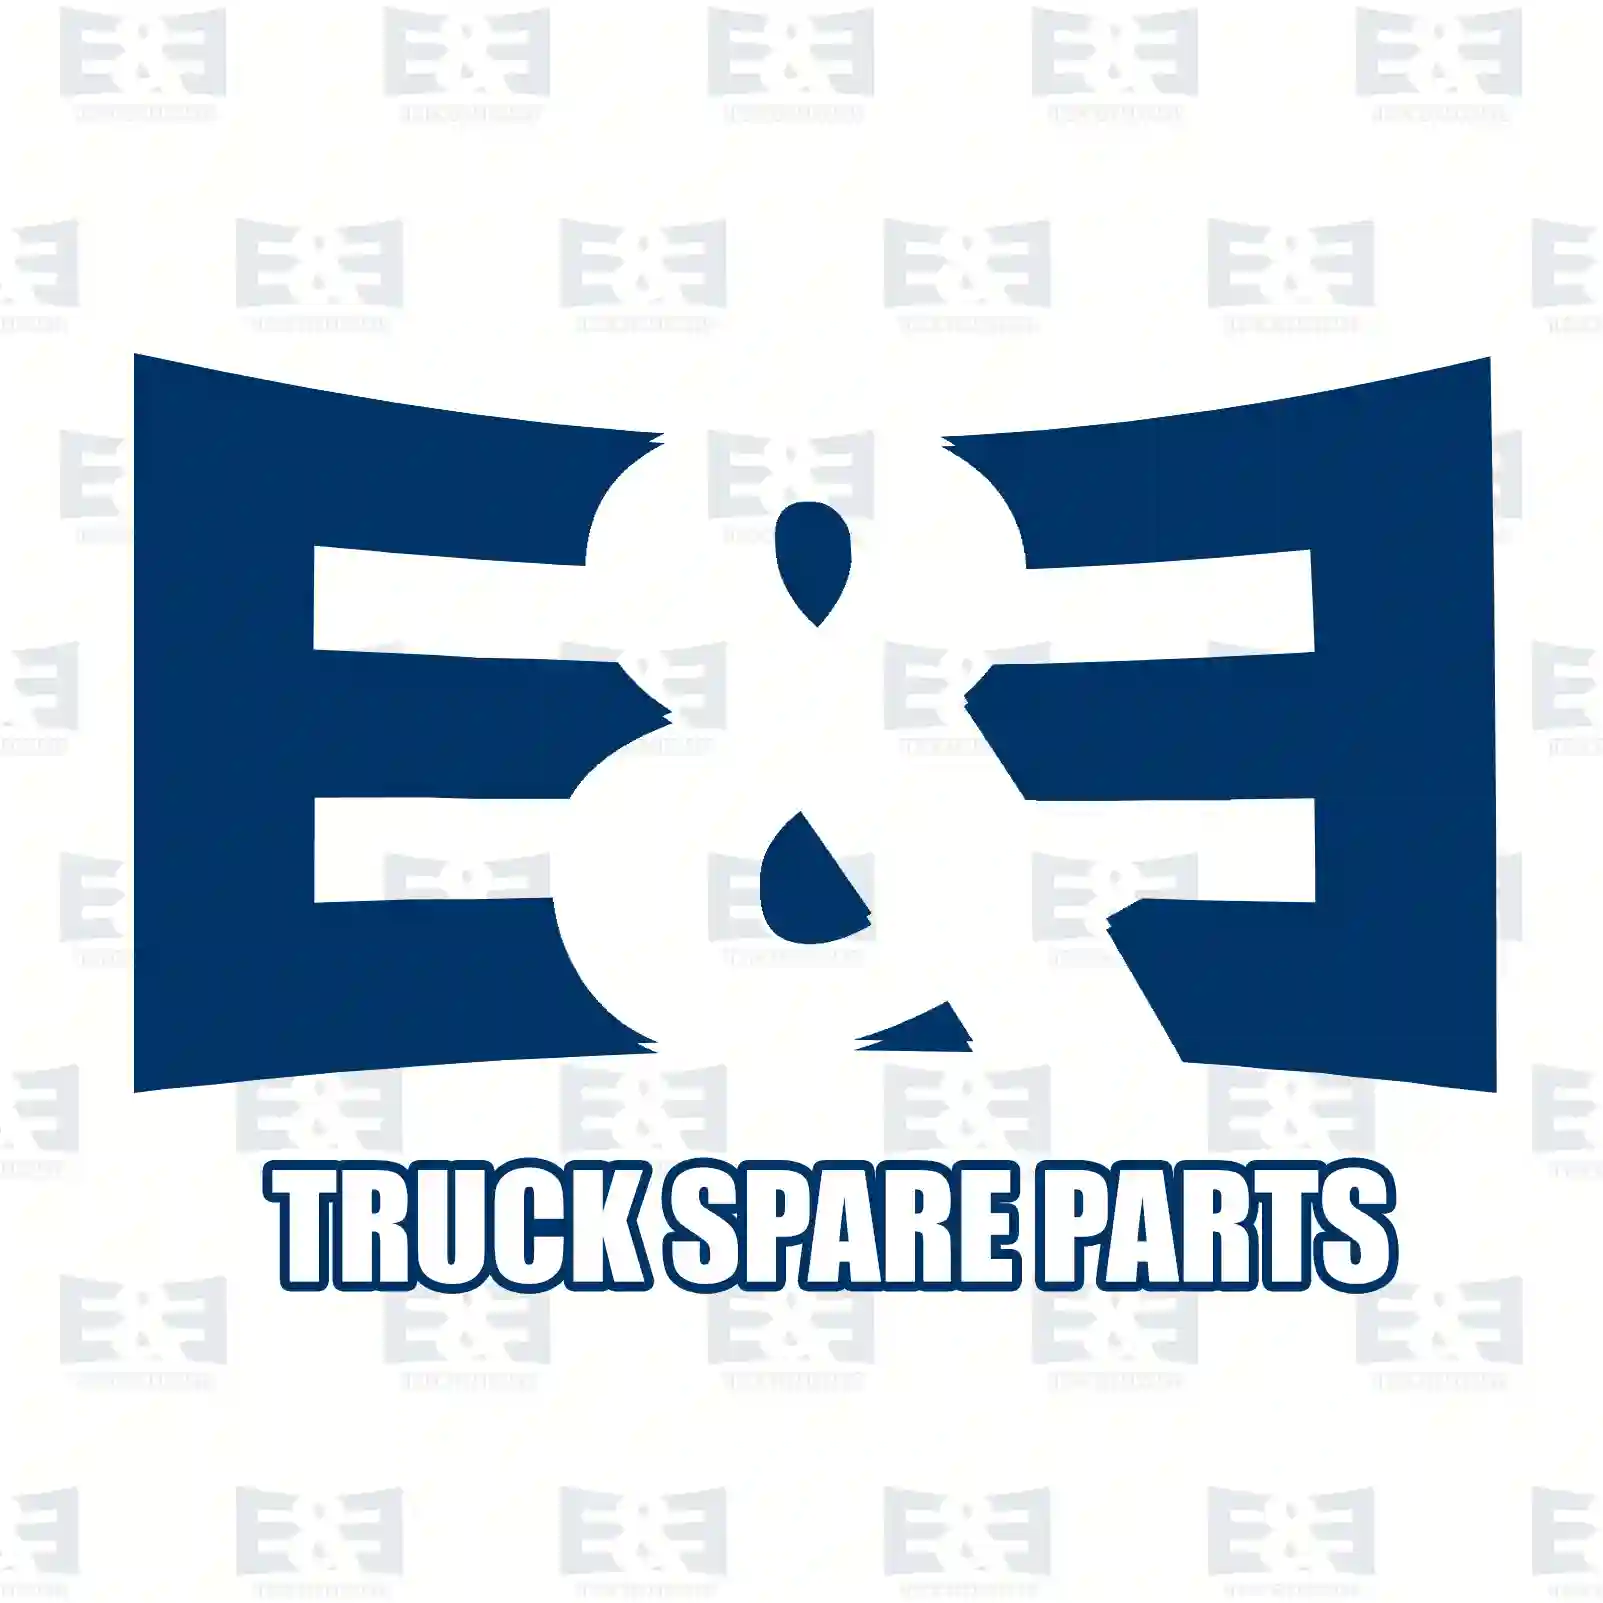 Brake caliper, right, 2E2297240, 1768153, 1843318, BK21-2552-AA, BK21-2552-AB ||  2E2297240 E&E Truck Spare Parts | Truck Spare Parts, Auotomotive Spare Parts Brake caliper, right, 2E2297240, 1768153, 1843318, BK21-2552-AA, BK21-2552-AB ||  2E2297240 E&E Truck Spare Parts | Truck Spare Parts, Auotomotive Spare Parts